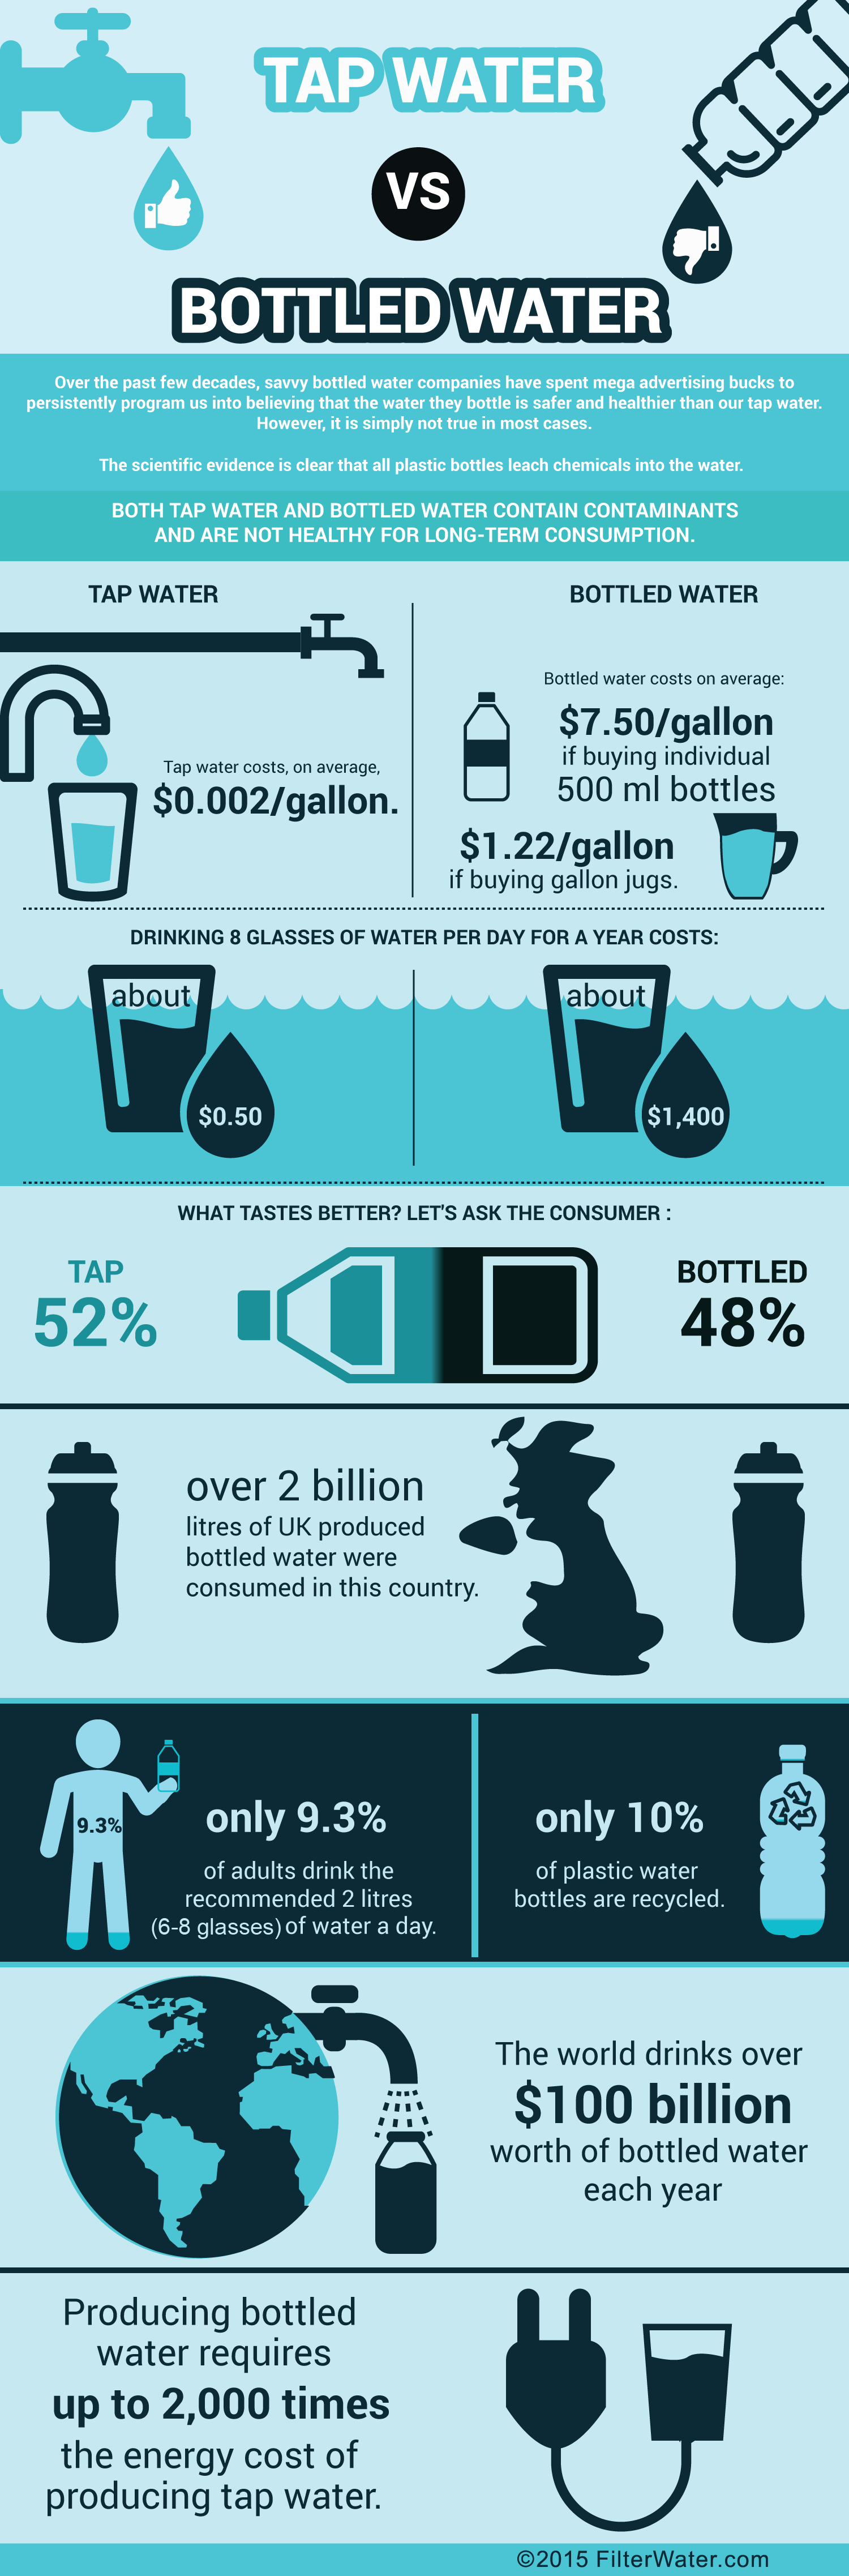 bottled water vs tap water essay